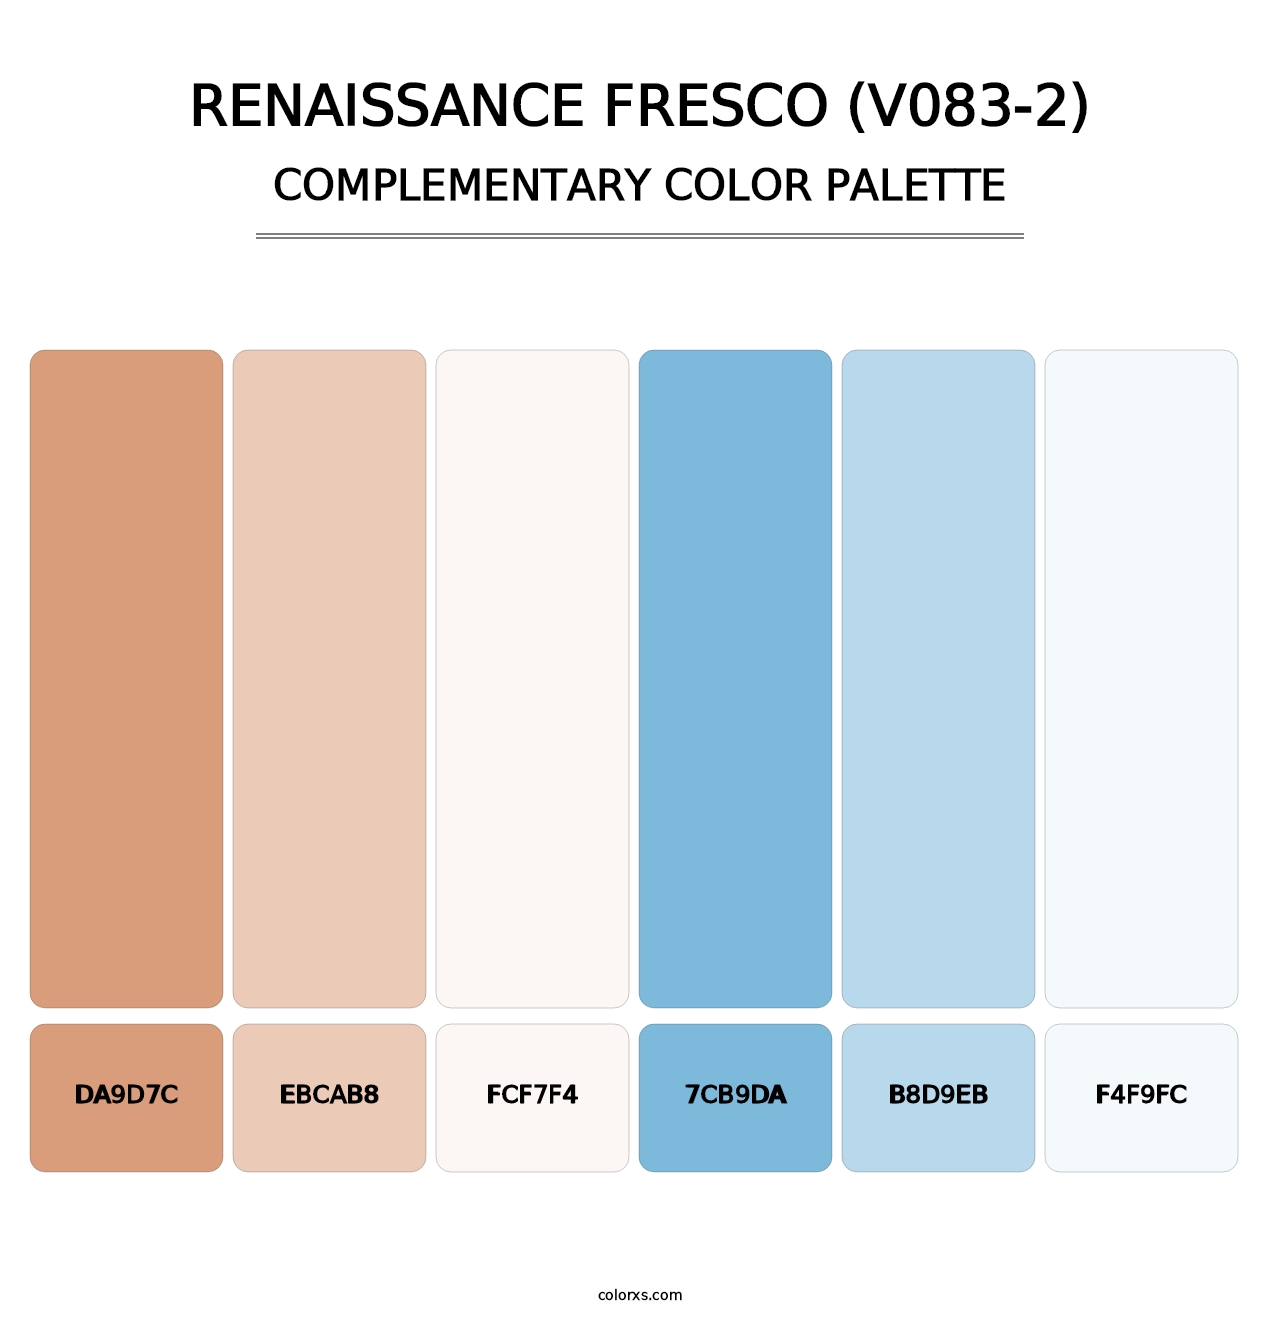 Renaissance Fresco (V083-2) - Complementary Color Palette